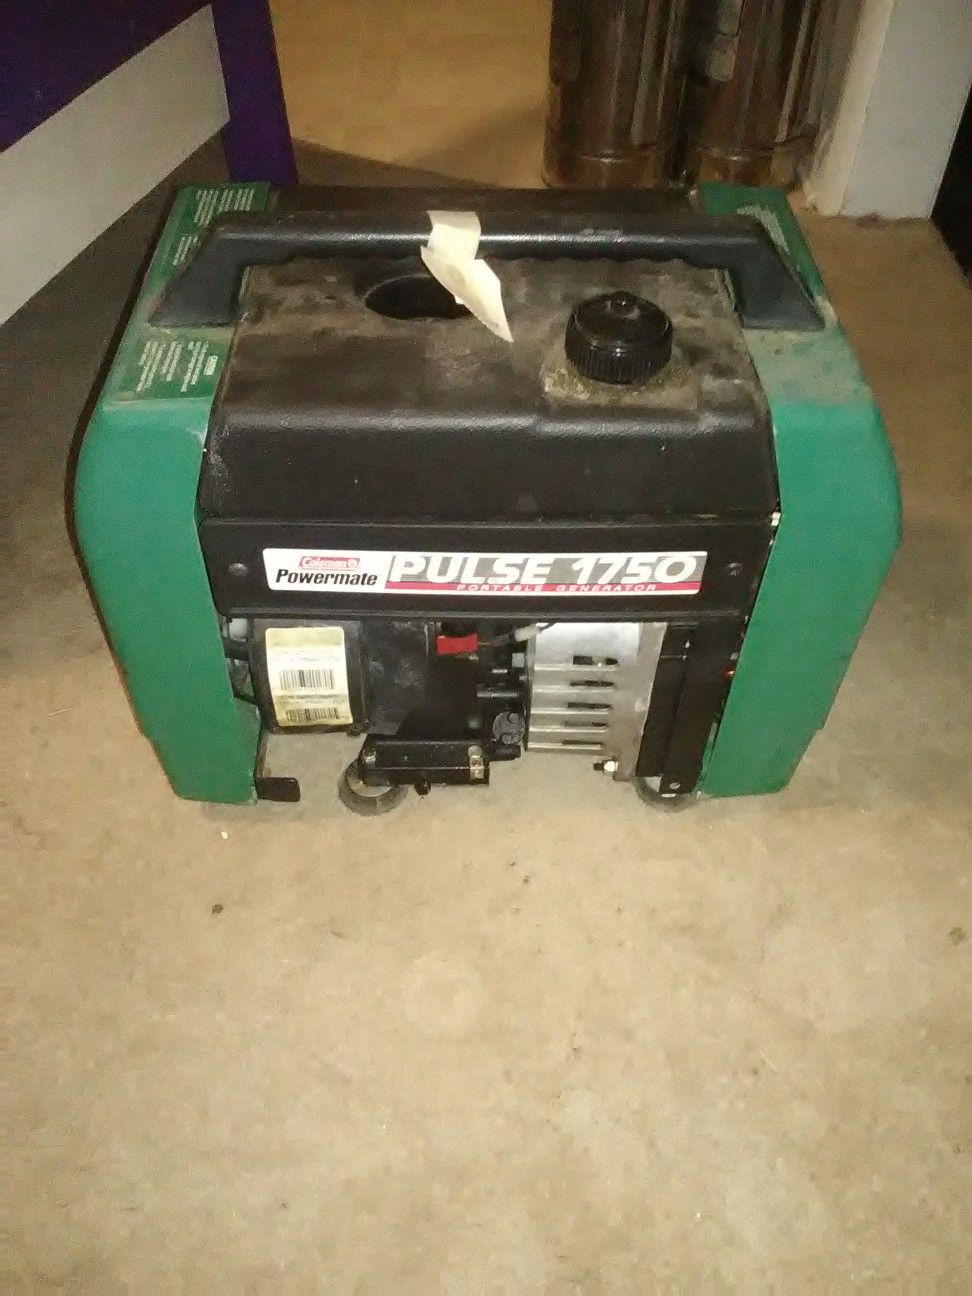 Coleman powermate 1750 generator